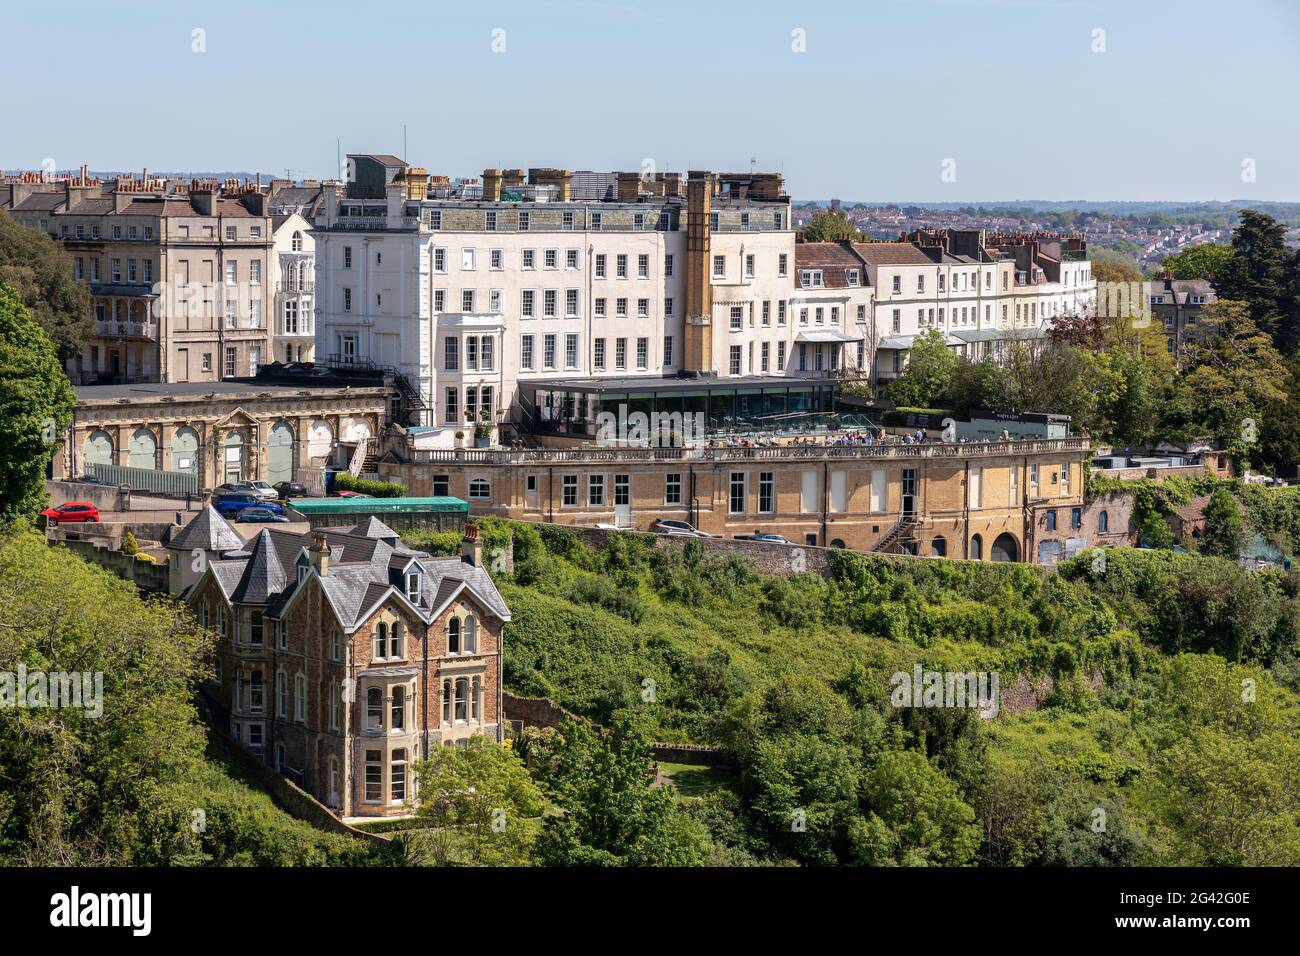 BRISTOL, Großbritannien - 13. Mai: Blick auf die Gebäude entlang des Flusses Avon in Clifton in Bristol am 13. Mai 2019. Nicht identifizierte Personen Stockfoto